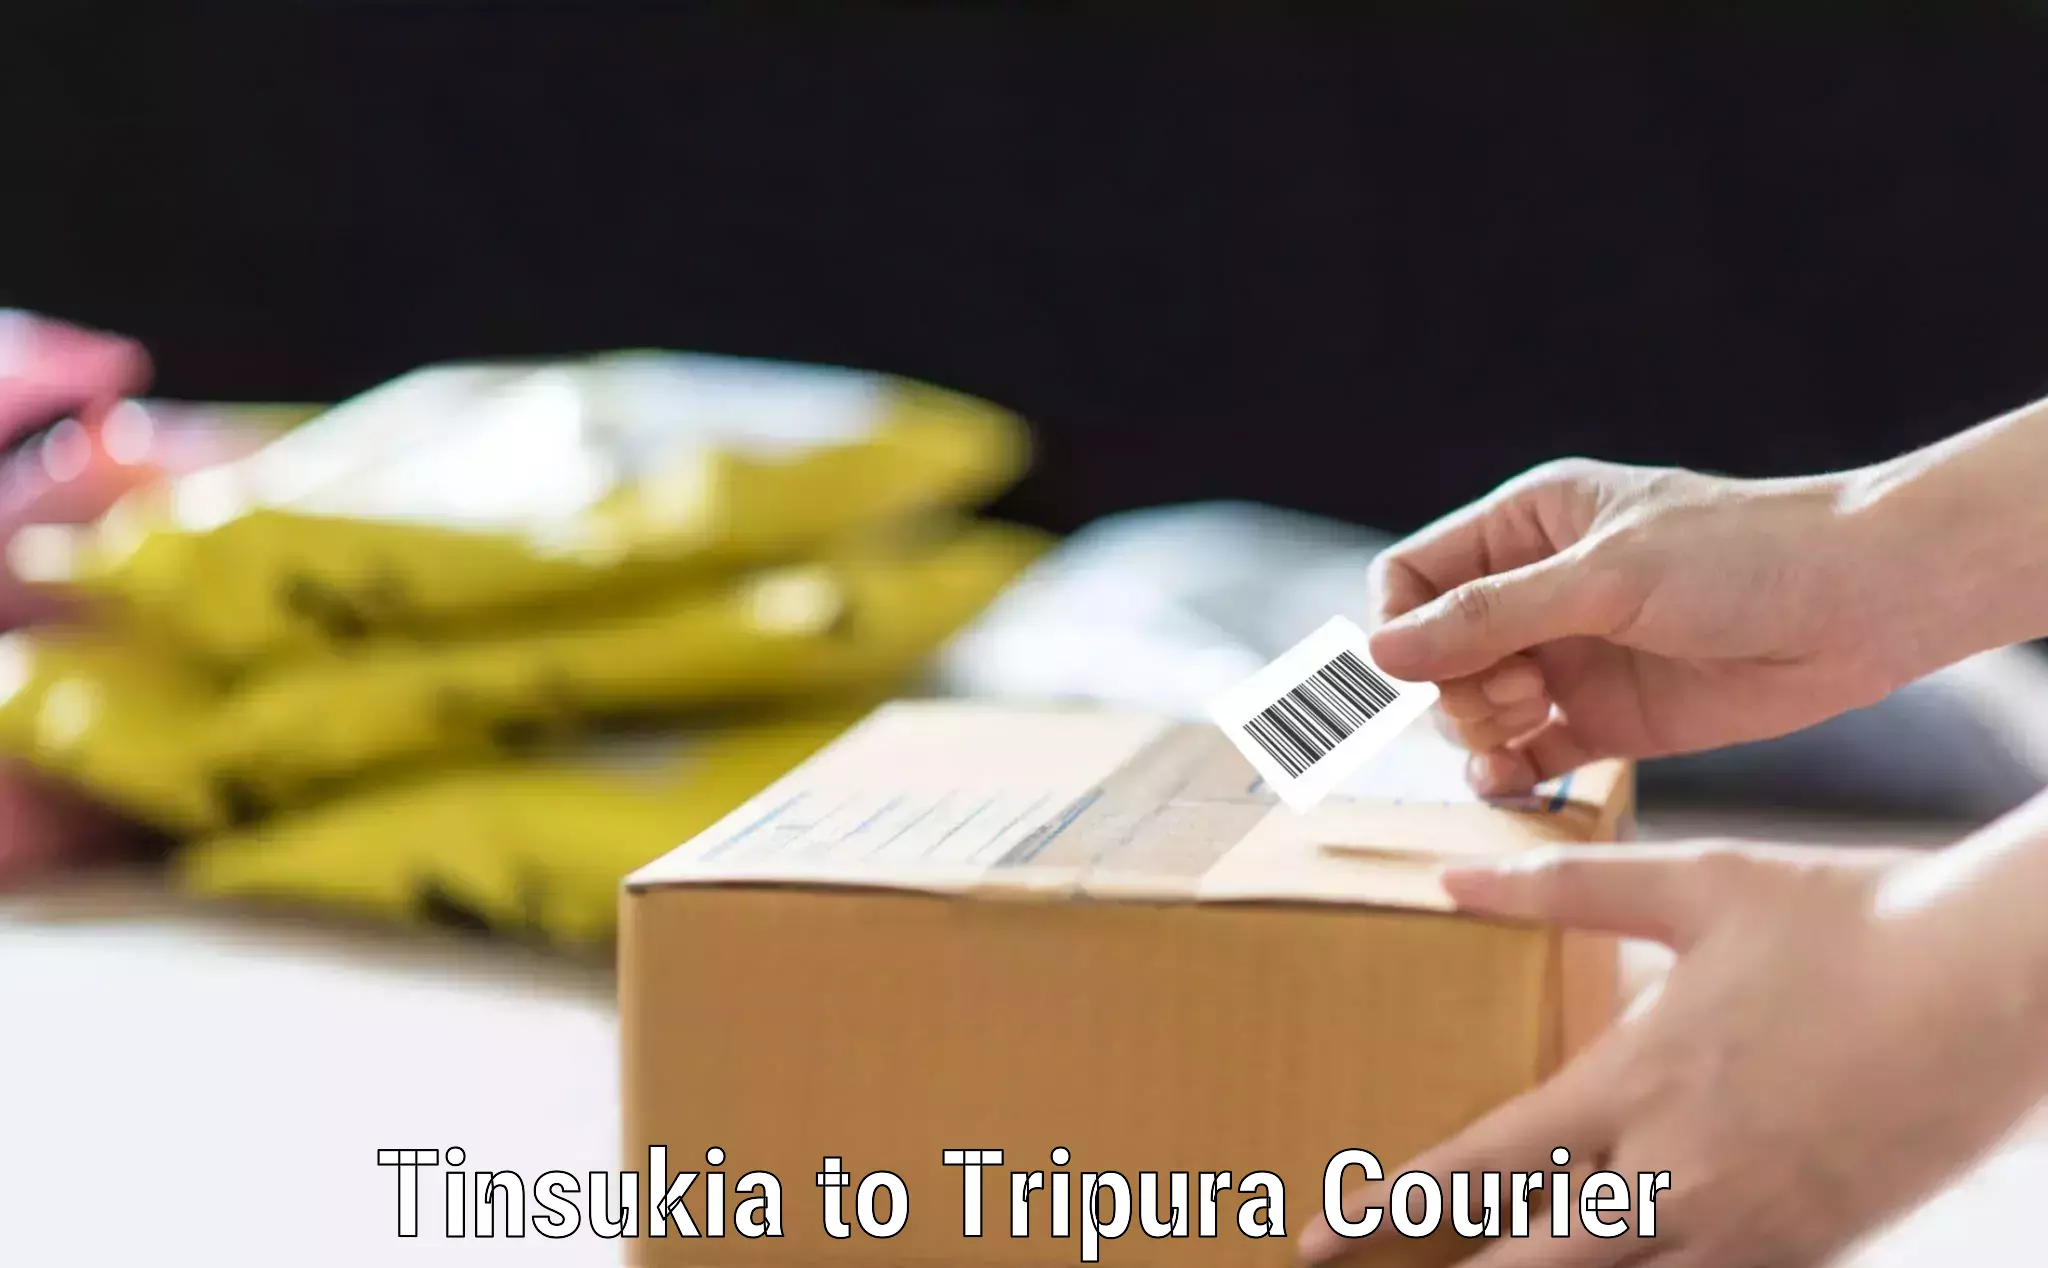 Baggage transport network Tinsukia to Sonamura